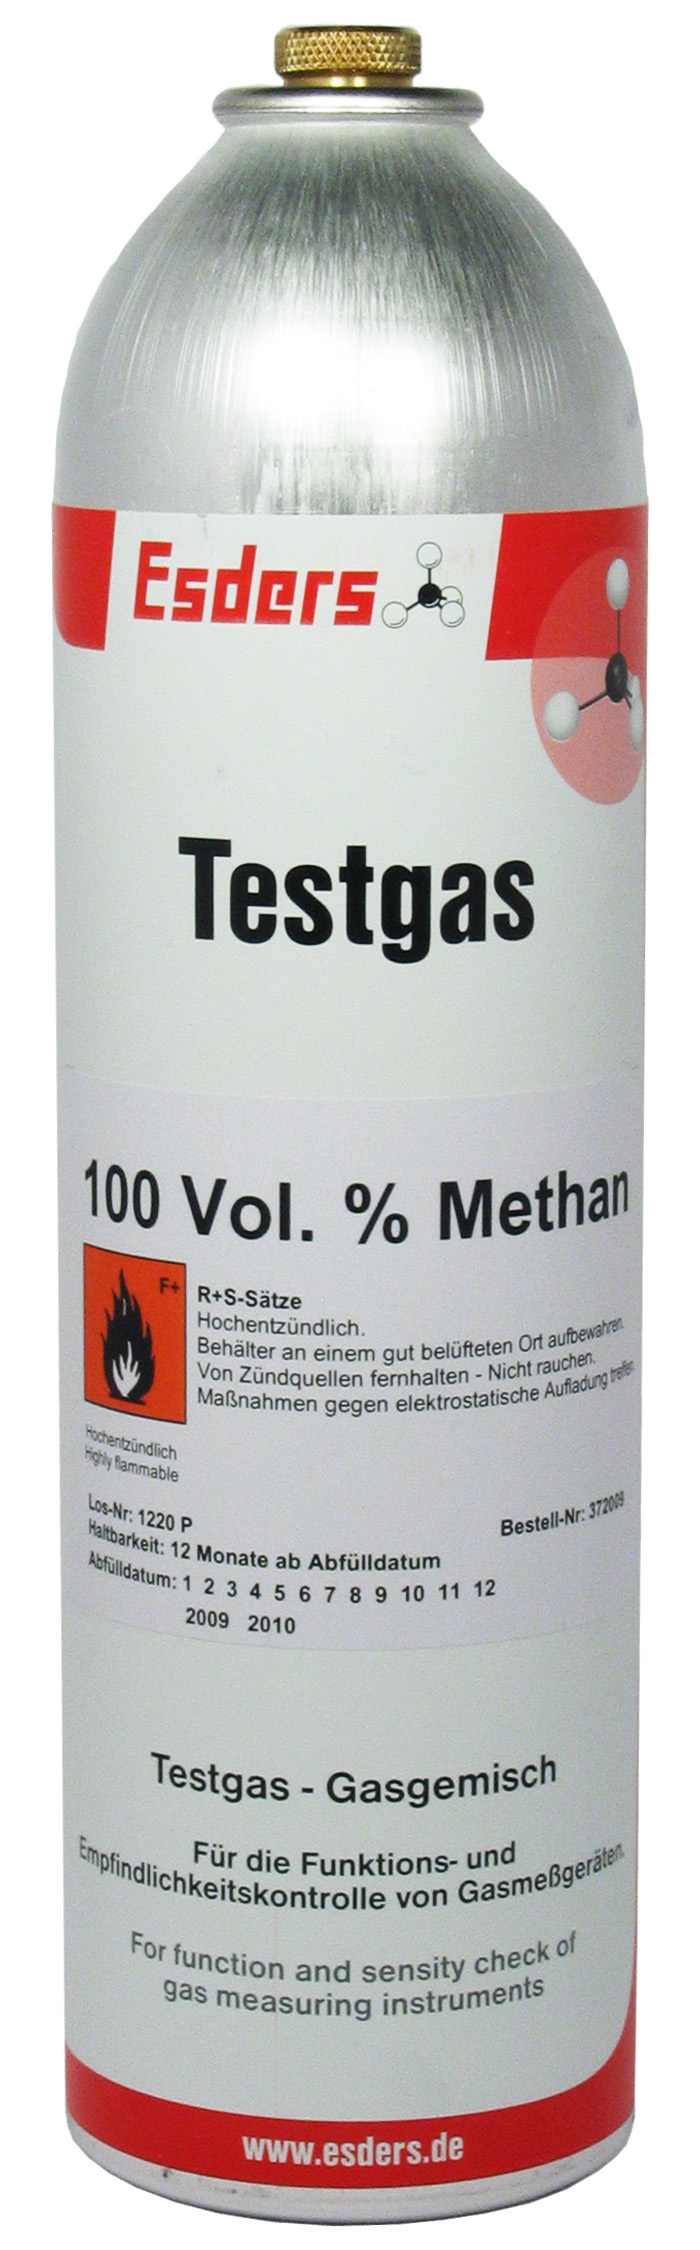 Test gas can 100 Vol.% methane